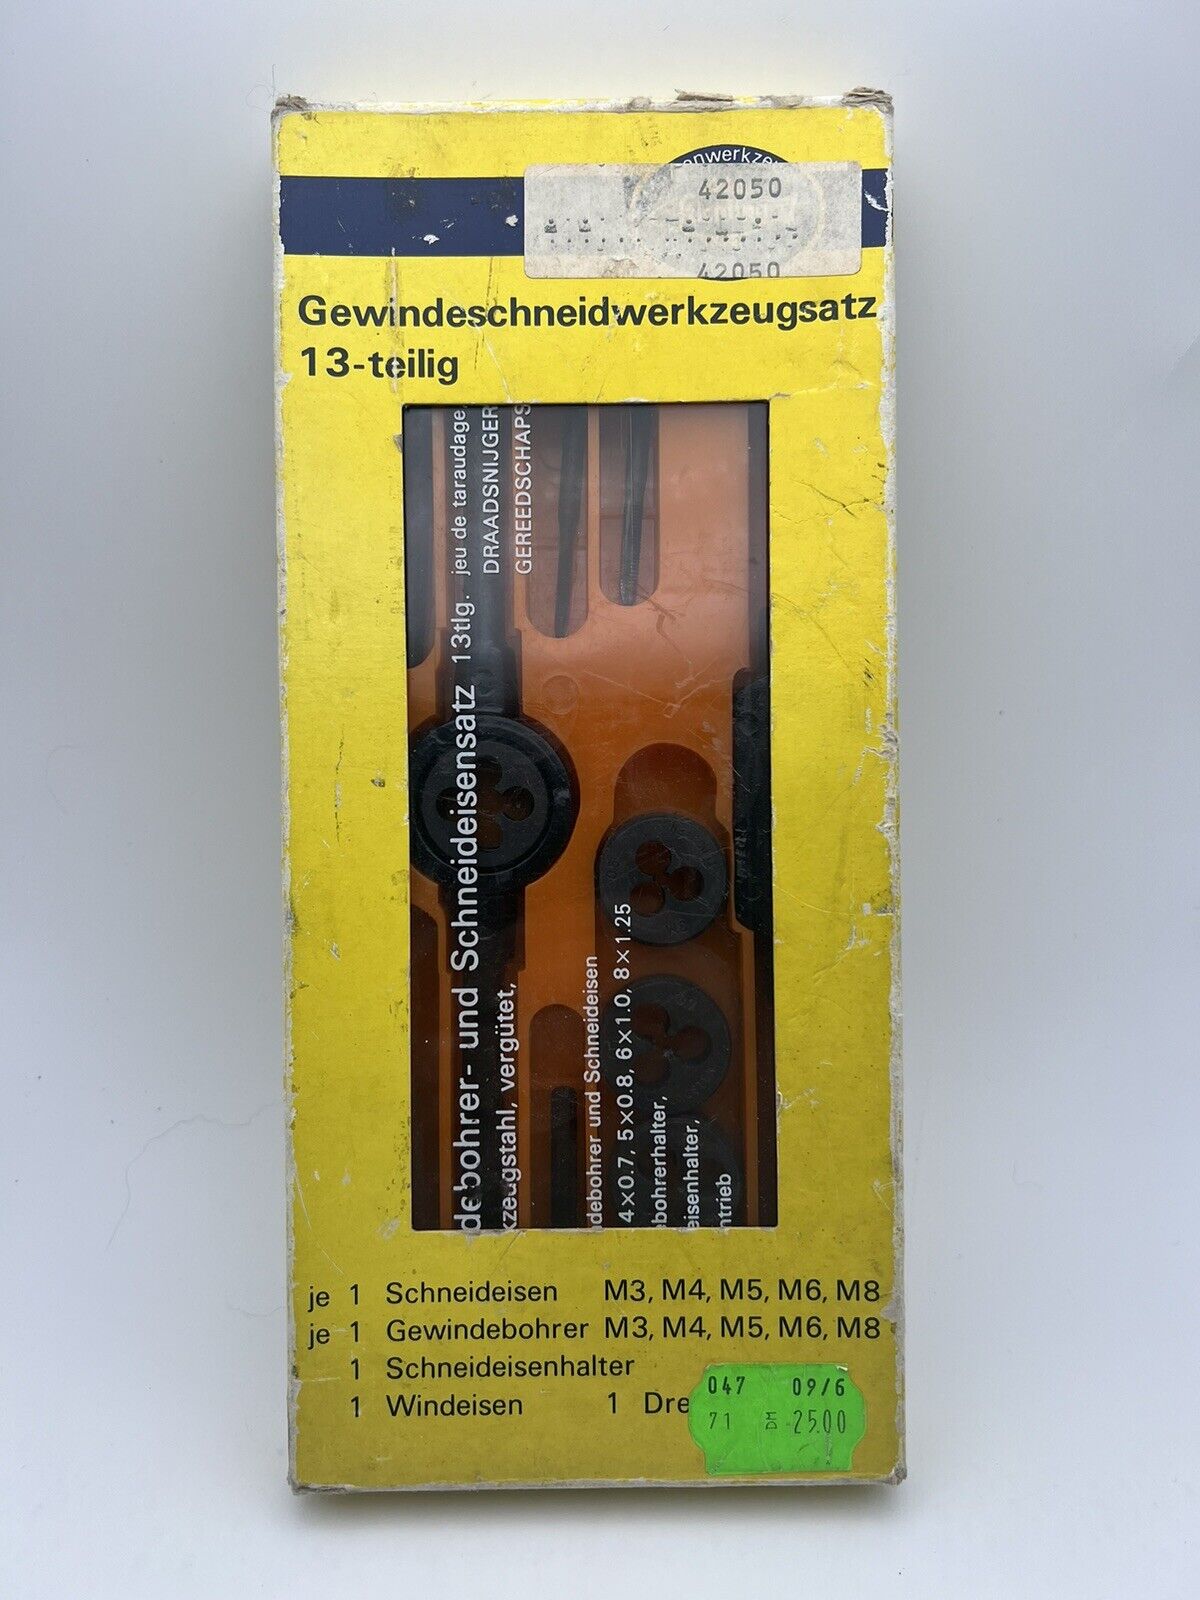 Vintage German Thread Cutting Tool Set “Gewindeschneidwerkzeugsatz”